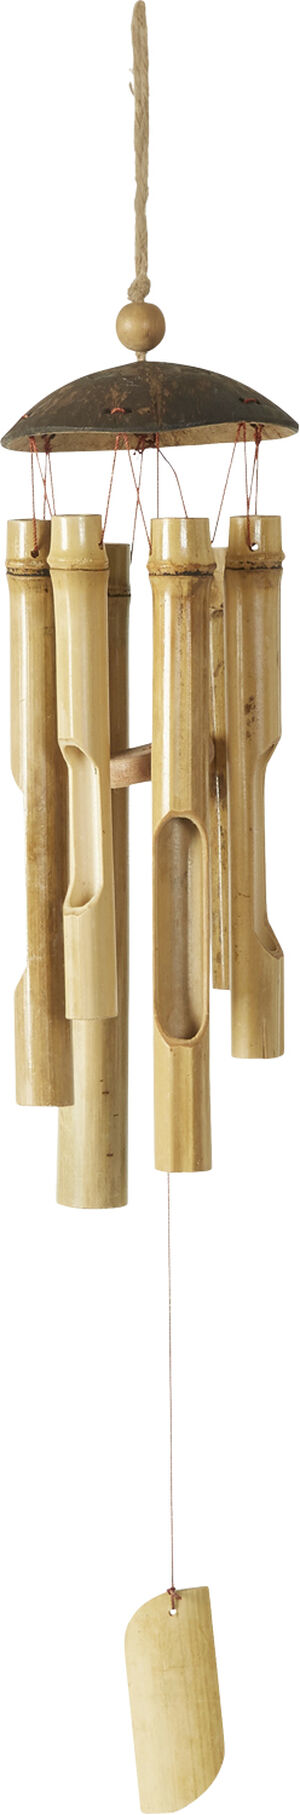 Vindspil D10x50cm bambus